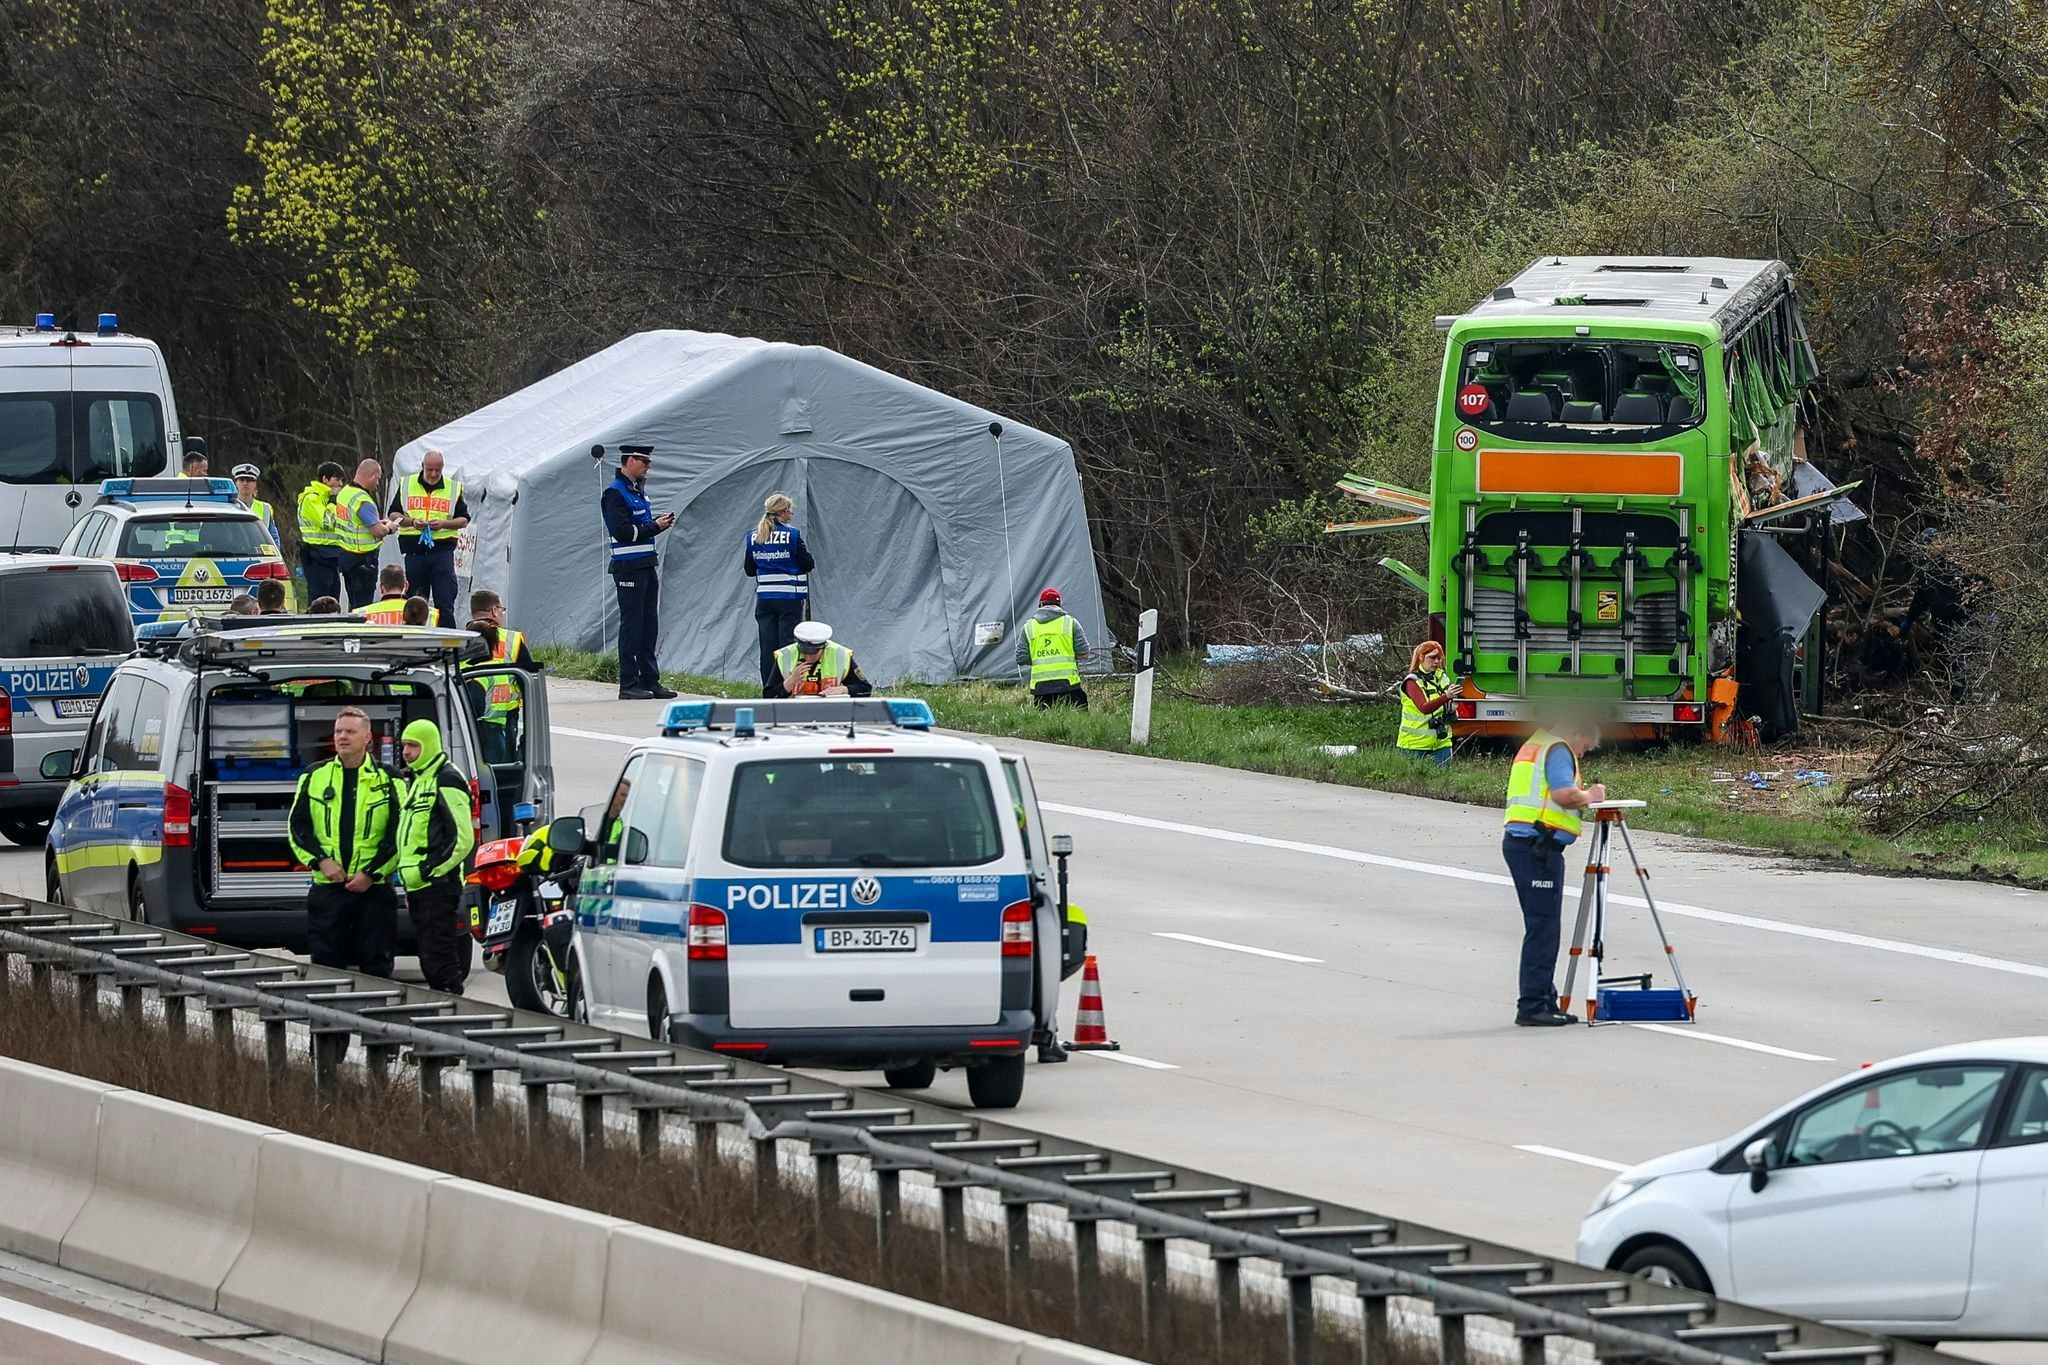 verkehr: schwerer busunfall: drei der vier todesopfer identifiziert